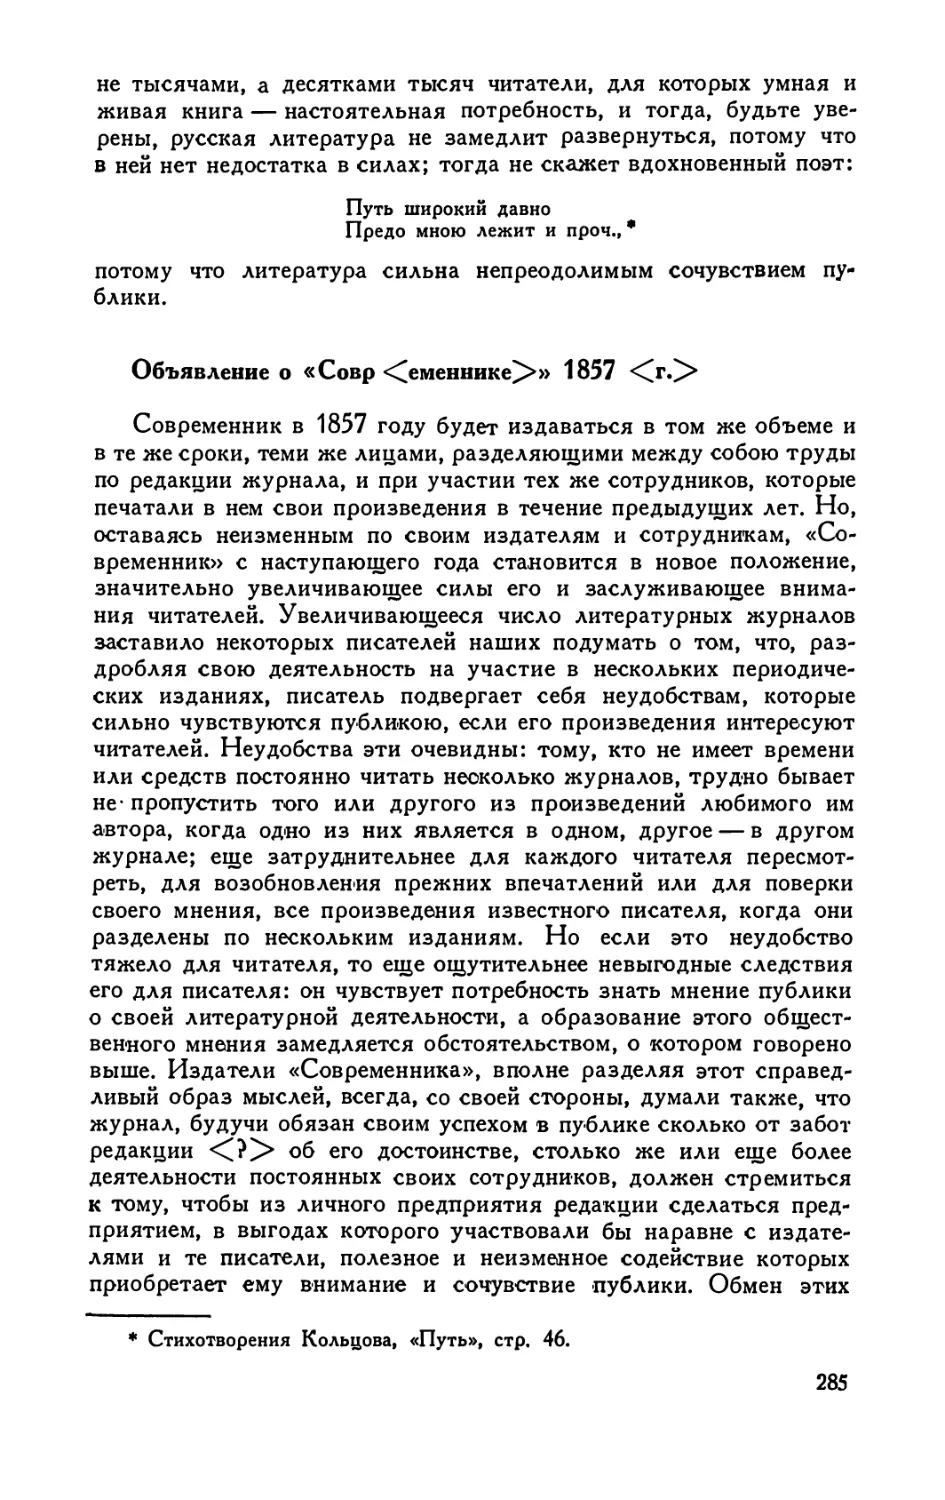 Объявление о «Совр<еменнике>» 1857 <г.>